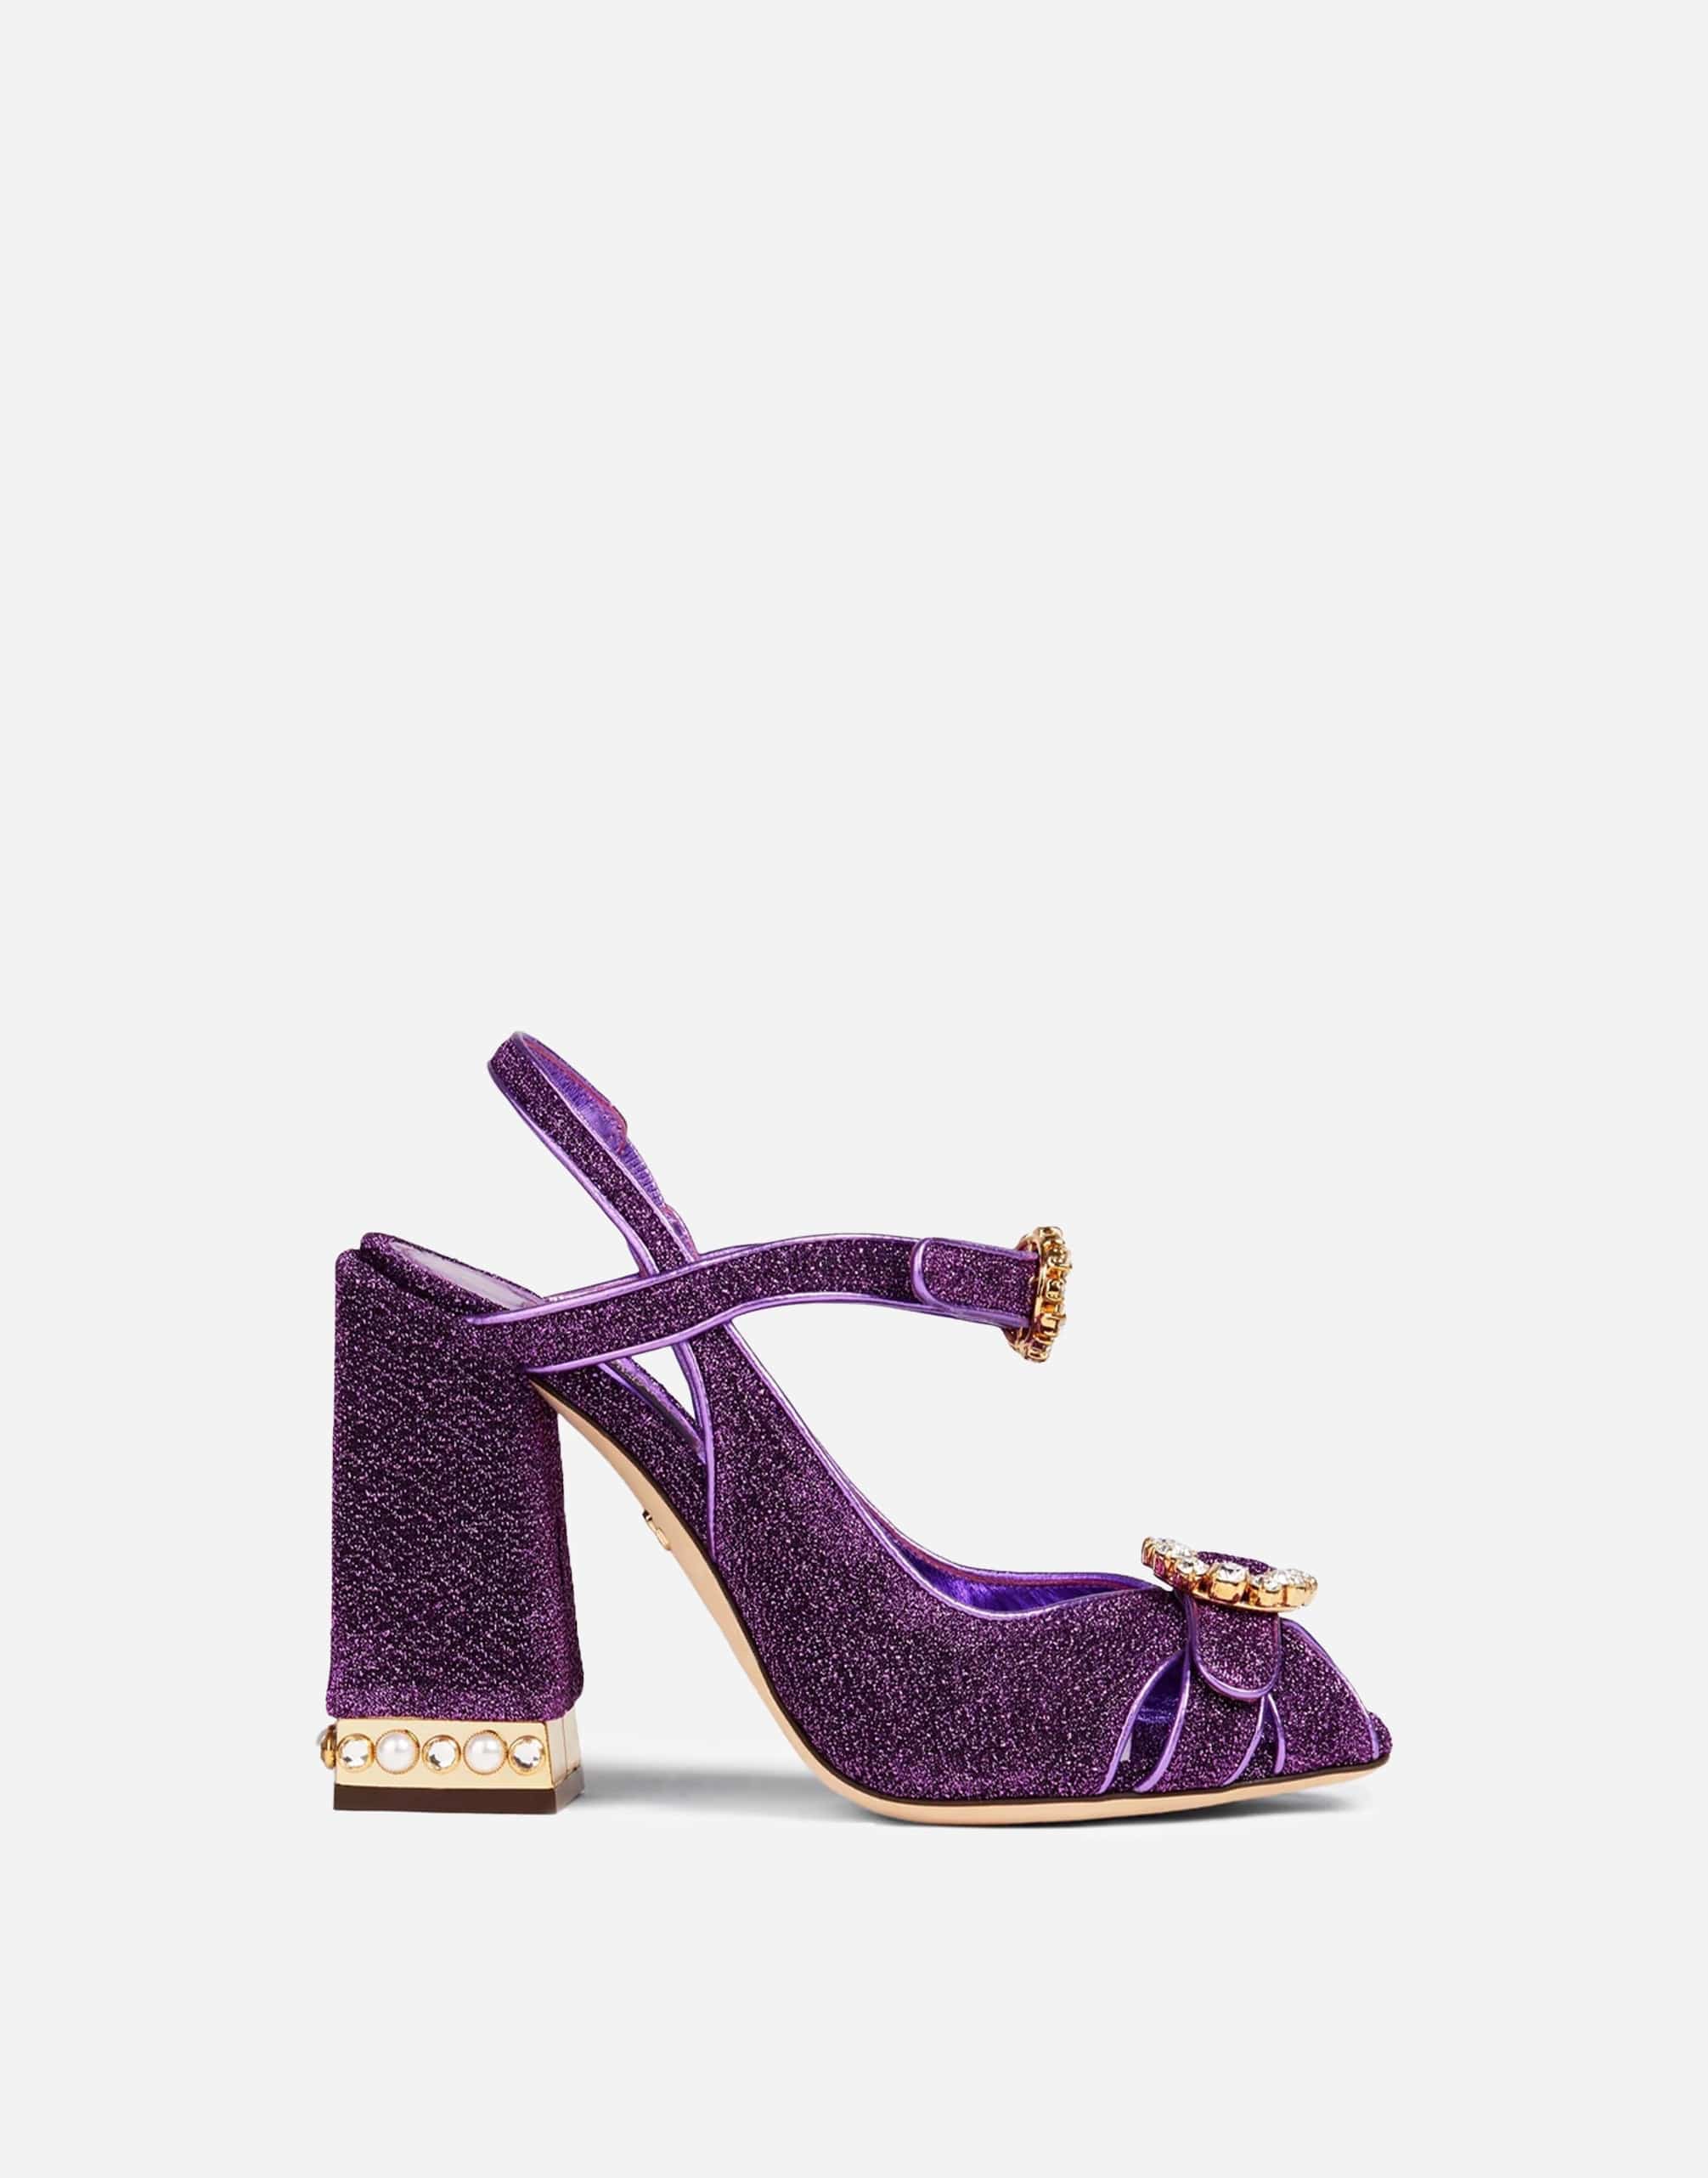 Dolce & Gabbana Embellished Lamé Sandals